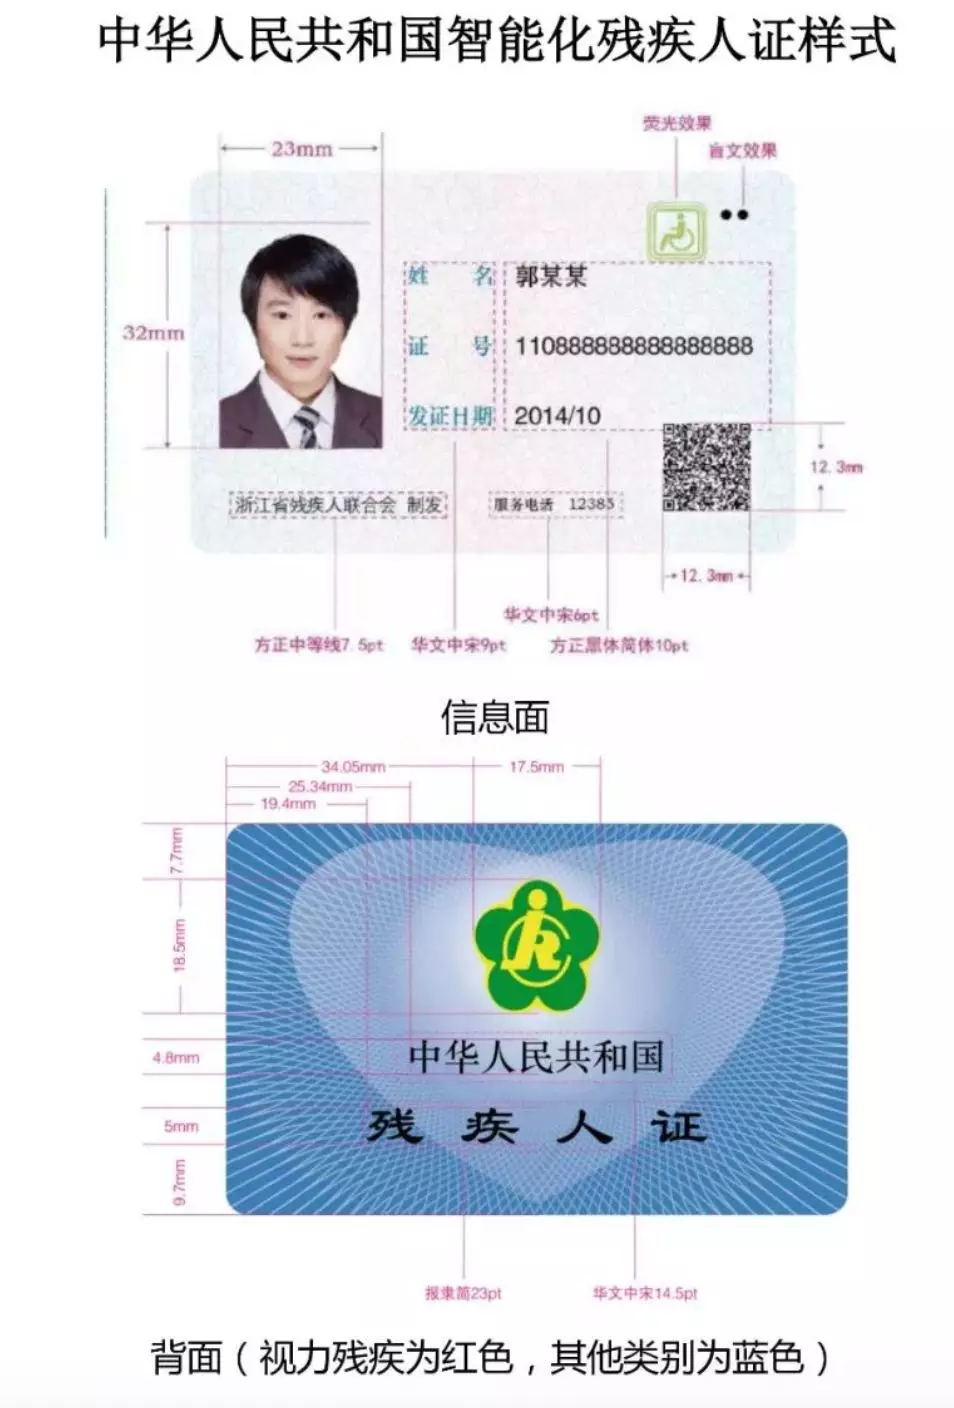 北京从 2014年就开始试点第三代智能化残疾人卡, 距今已经4年了,早已